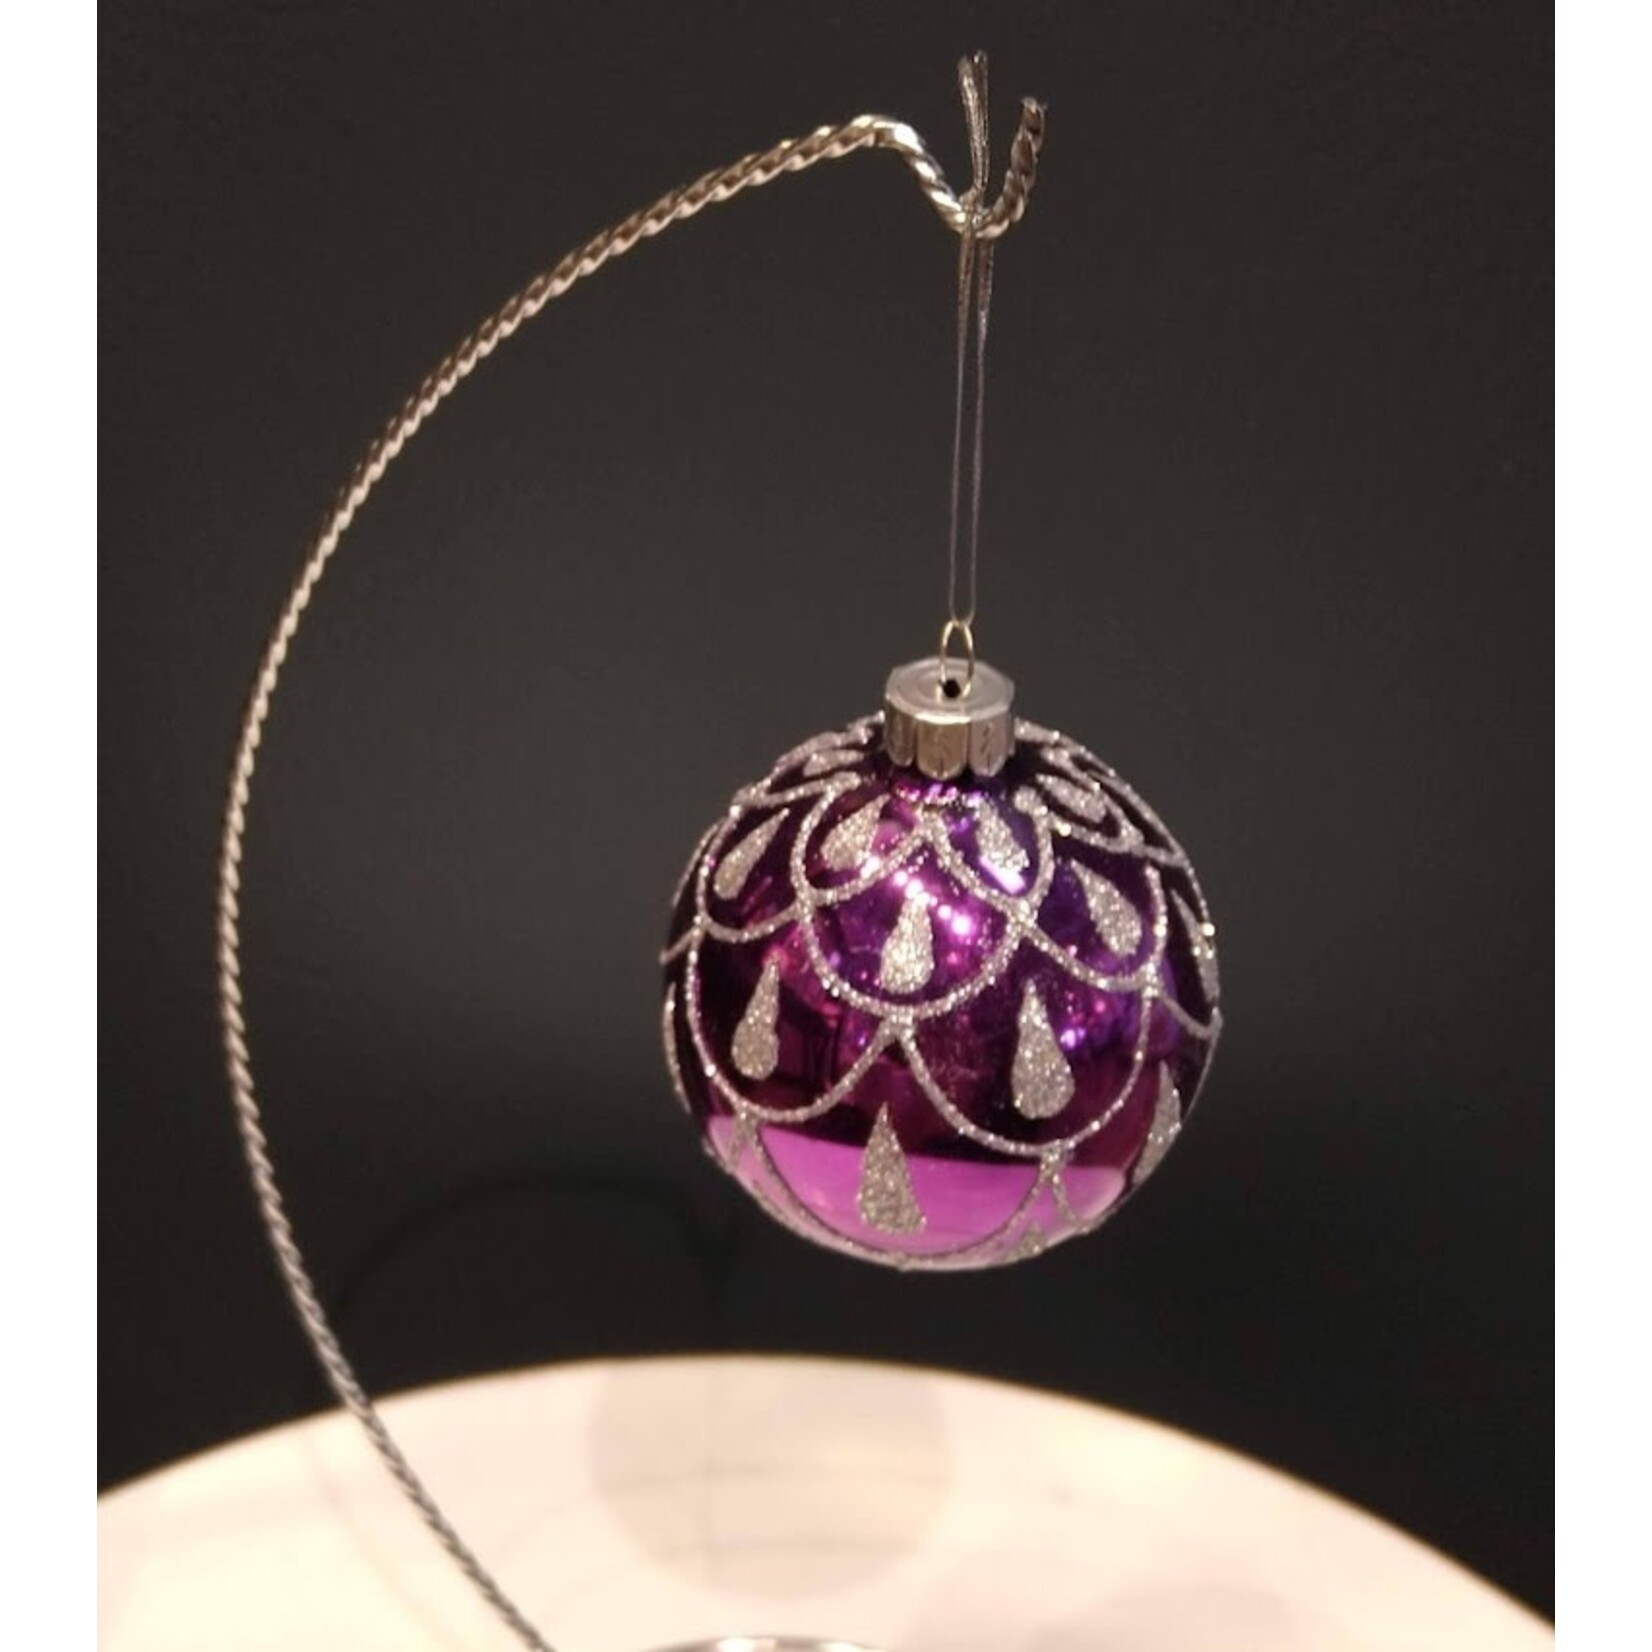 Two's Company Purple Ornament Small